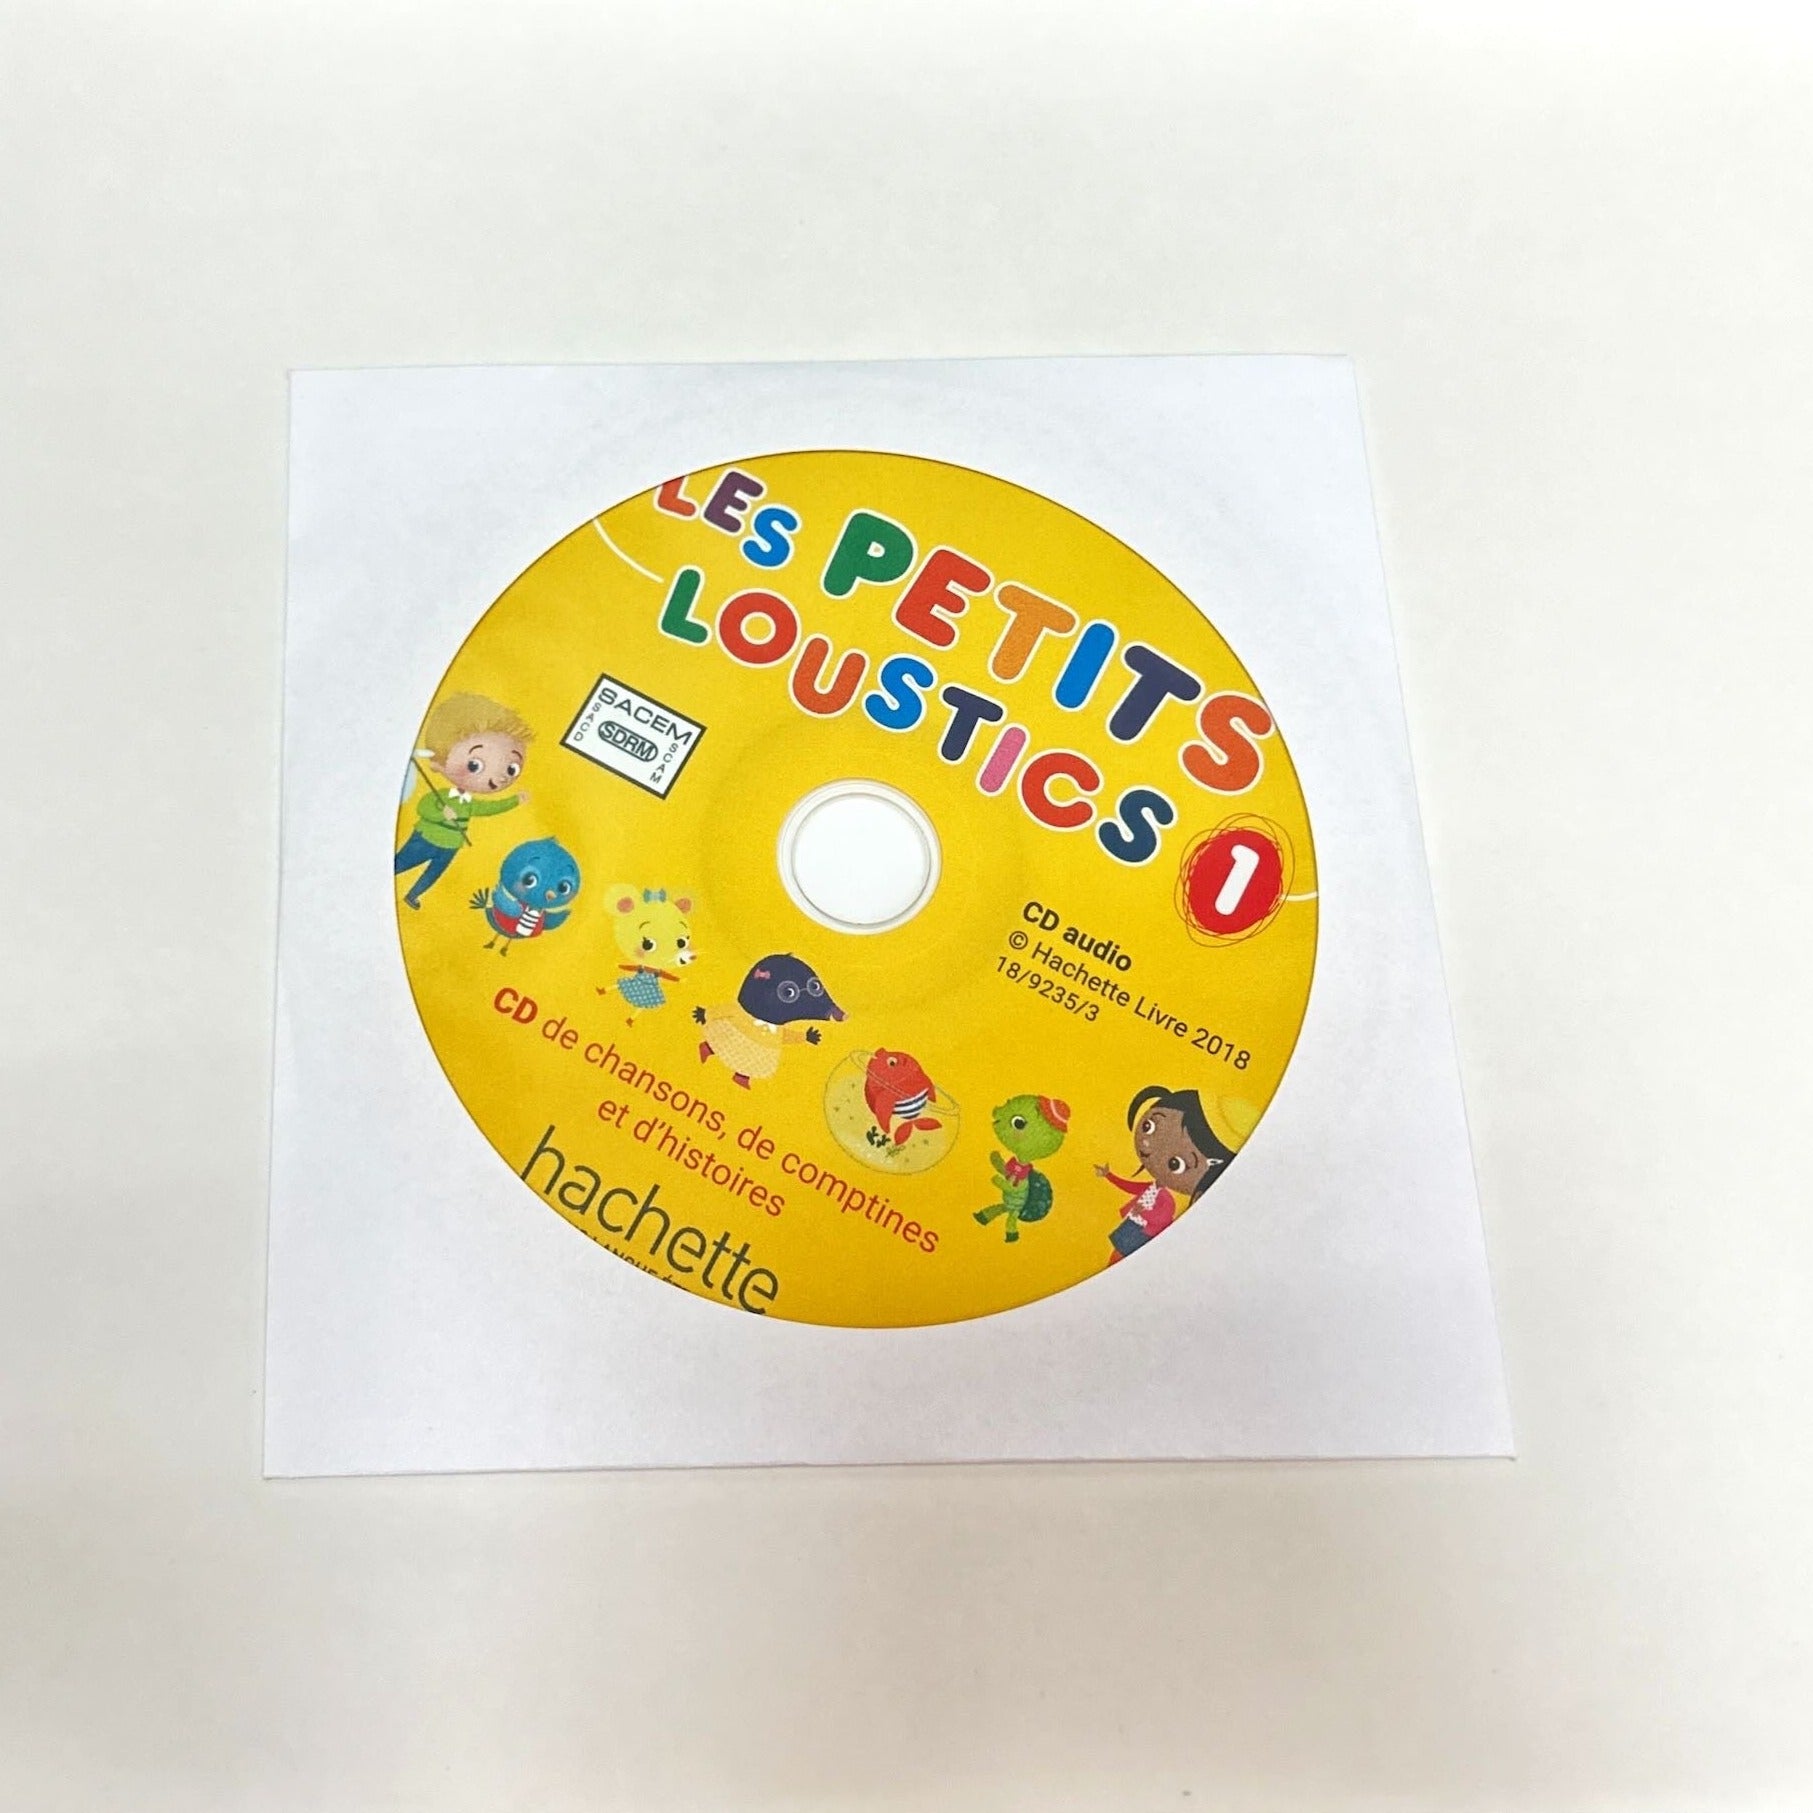 原版進口 Hachette 經典兒童法文教材 LES PETITS LOUSTICS 1 : CAHIER D'ACTIVITES + CD AUDIO 作業本+CD